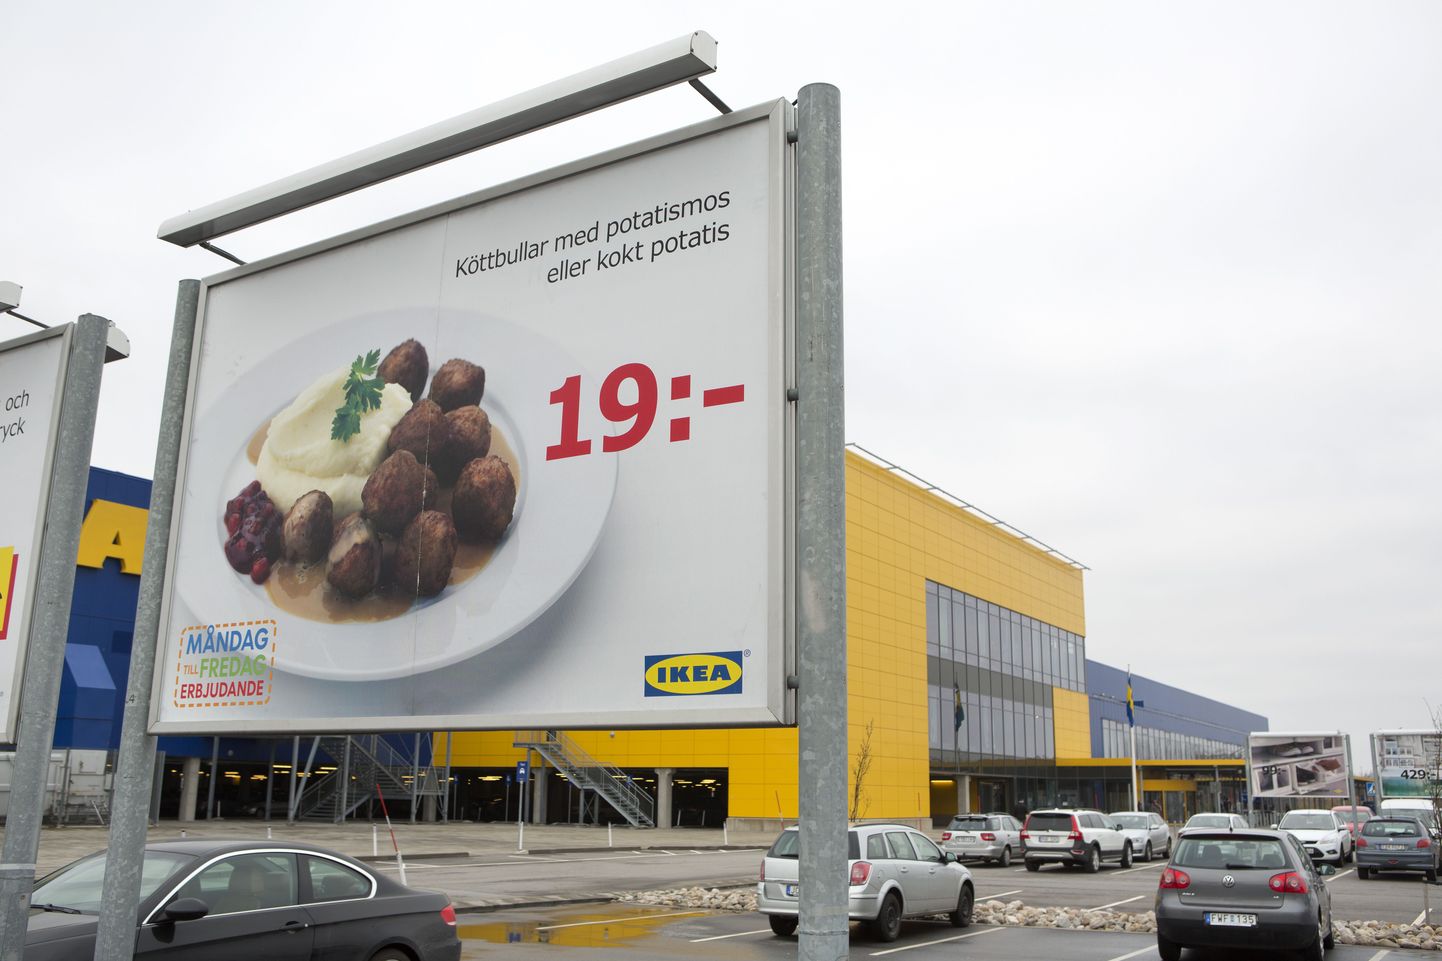 Lihapallide reklaam Ikea poe juures Malmös.